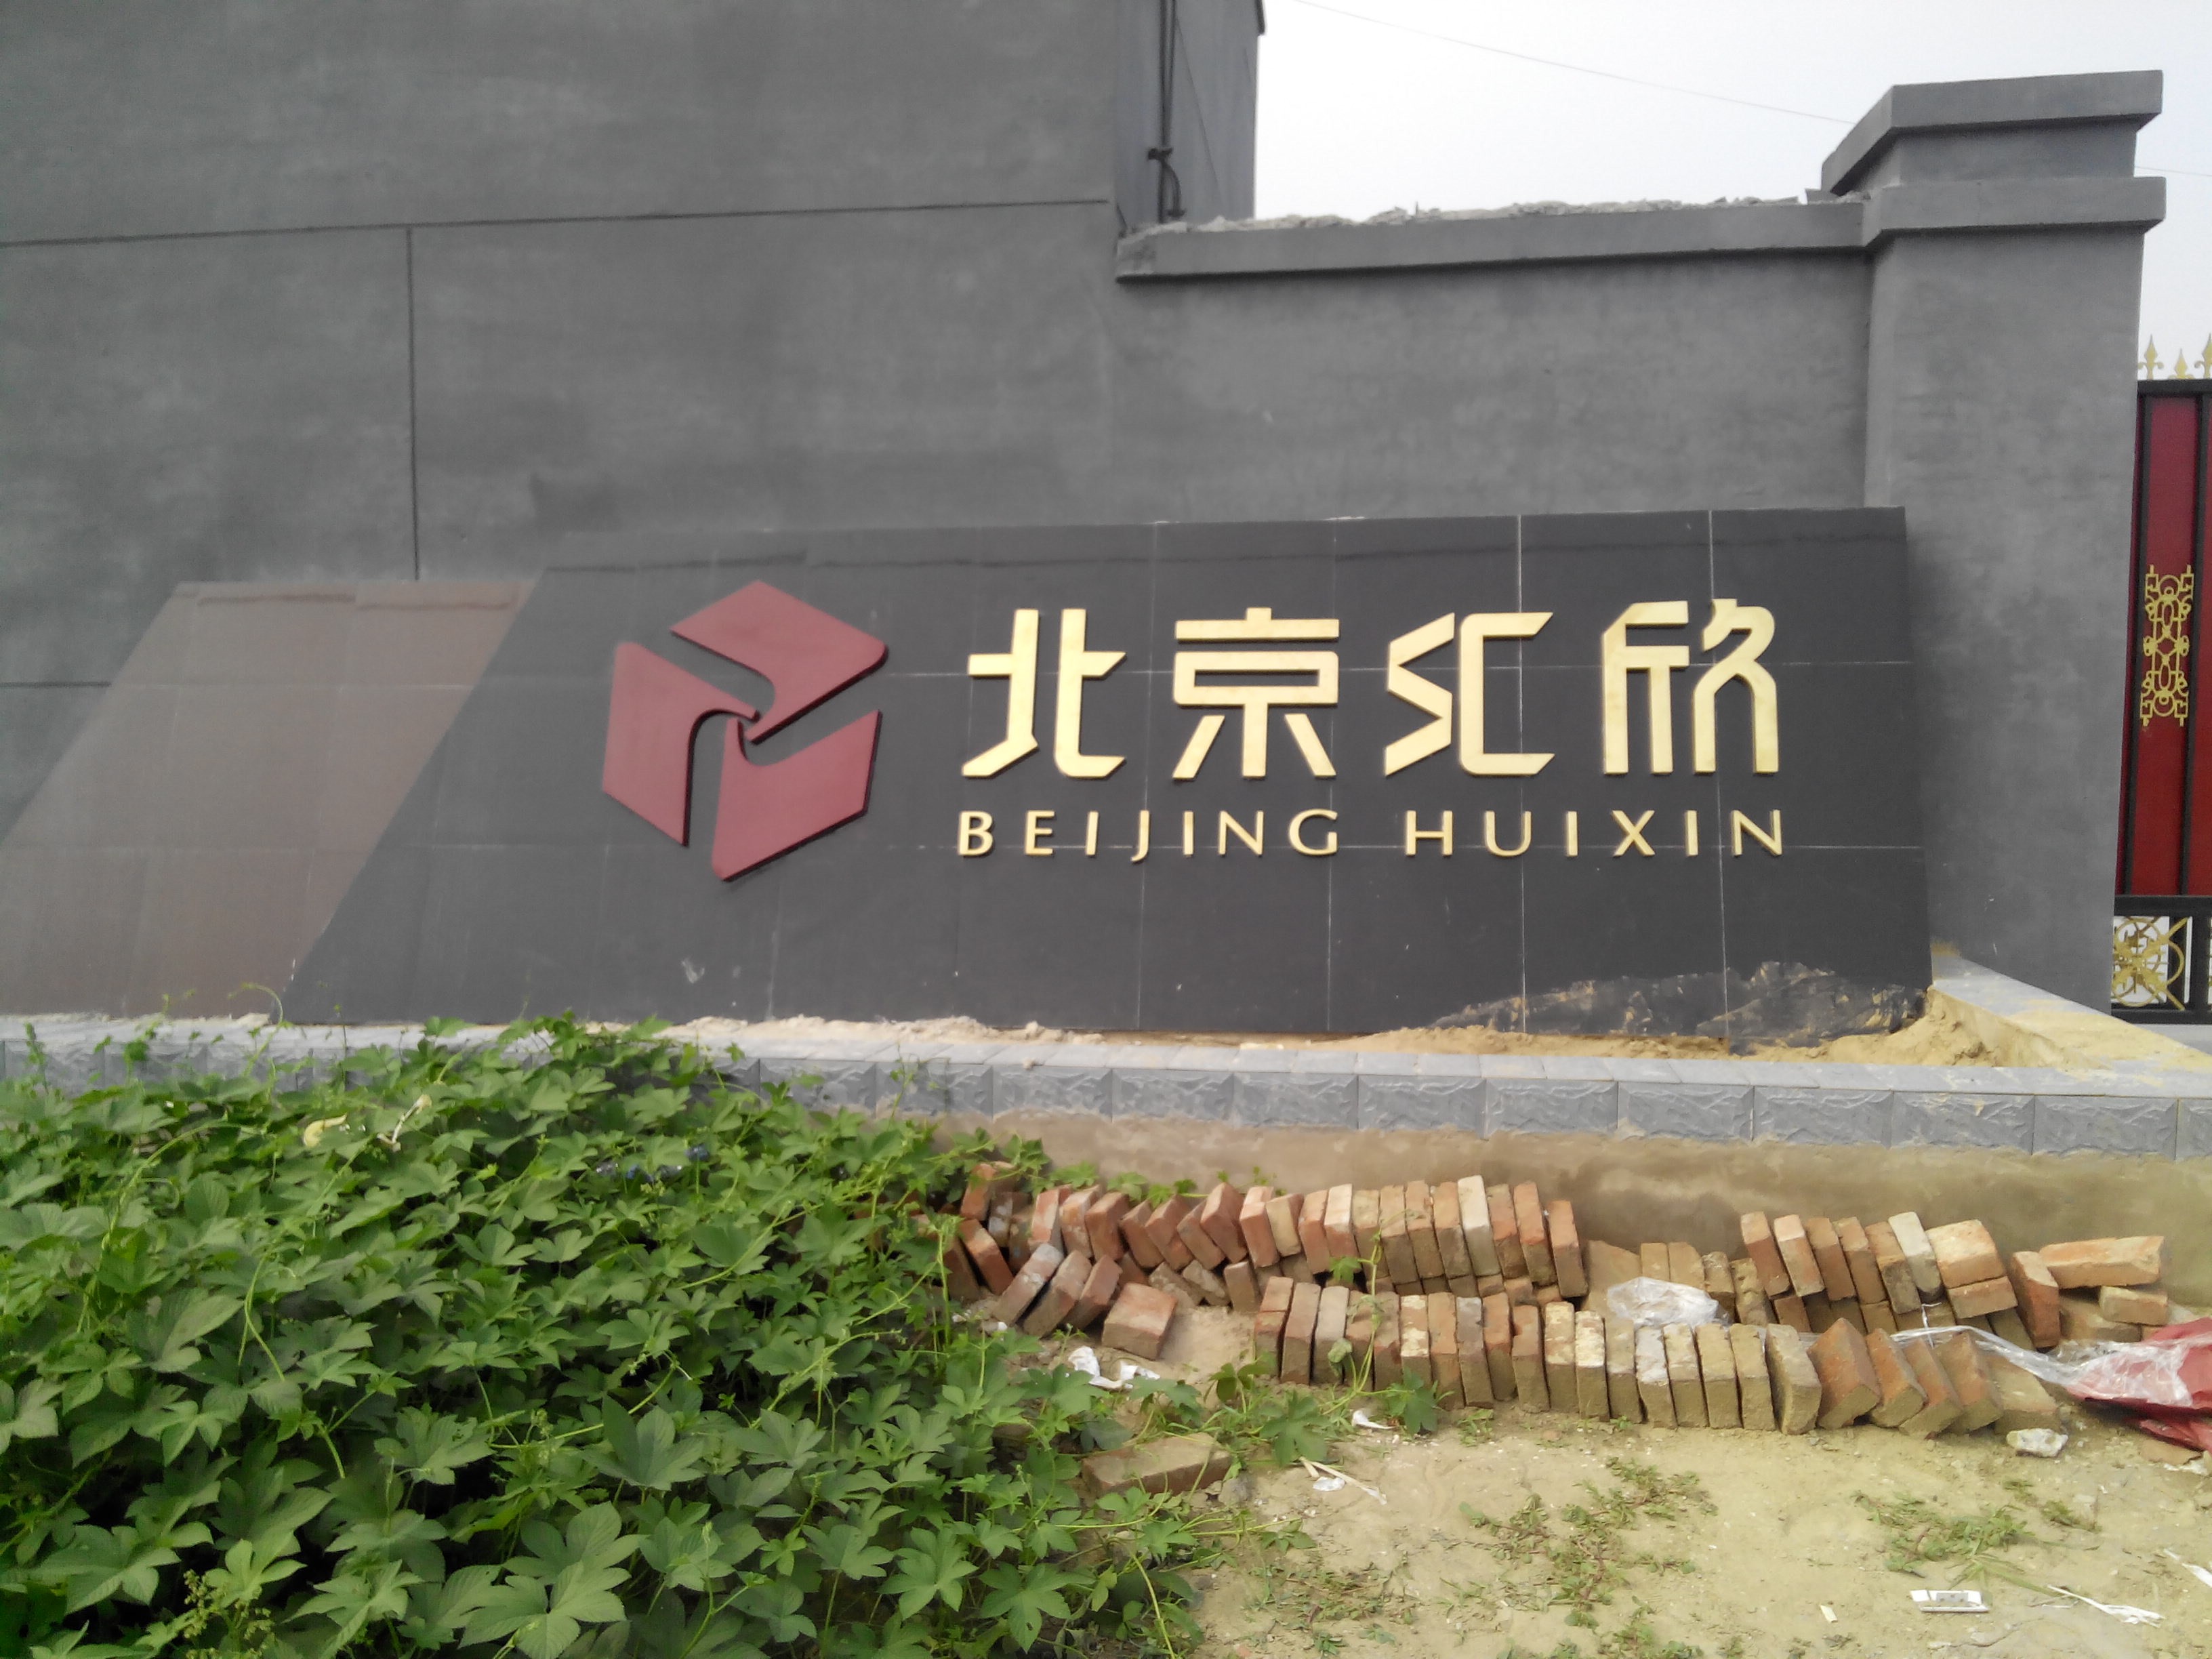 北京市仿古铜字制作厂家供应用于广告展示的北京铜字厂家 仿古铜字 纯铜字制作 仿古铜字制作